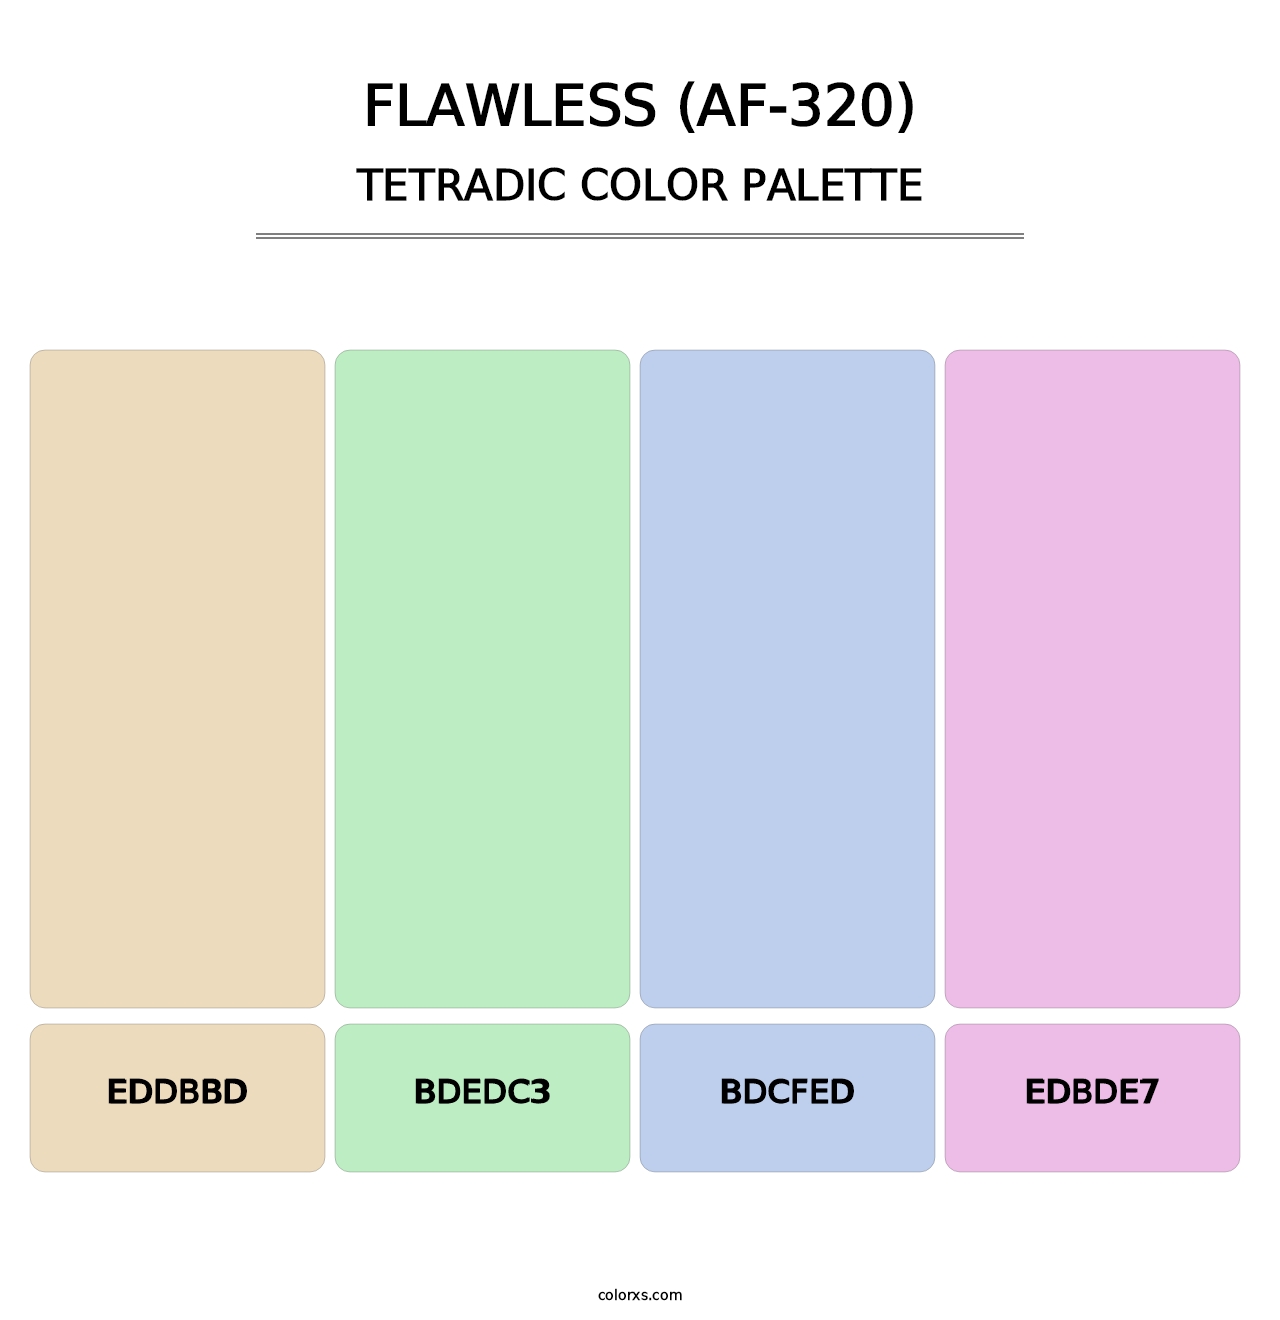 Flawless (AF-320) - Tetradic Color Palette